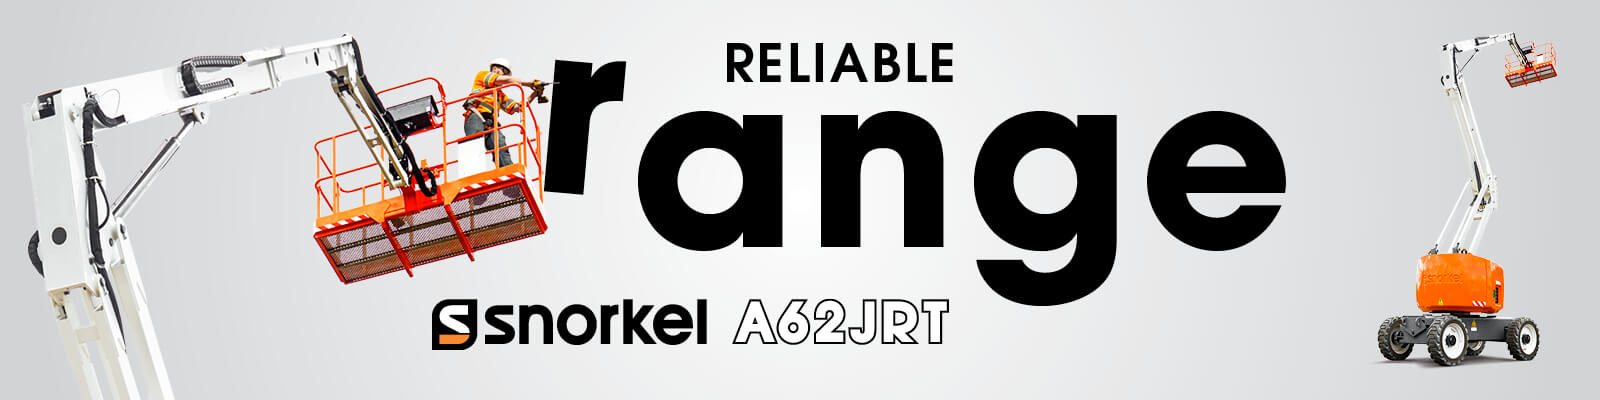 Reliable Range - Snorkel A62JRT